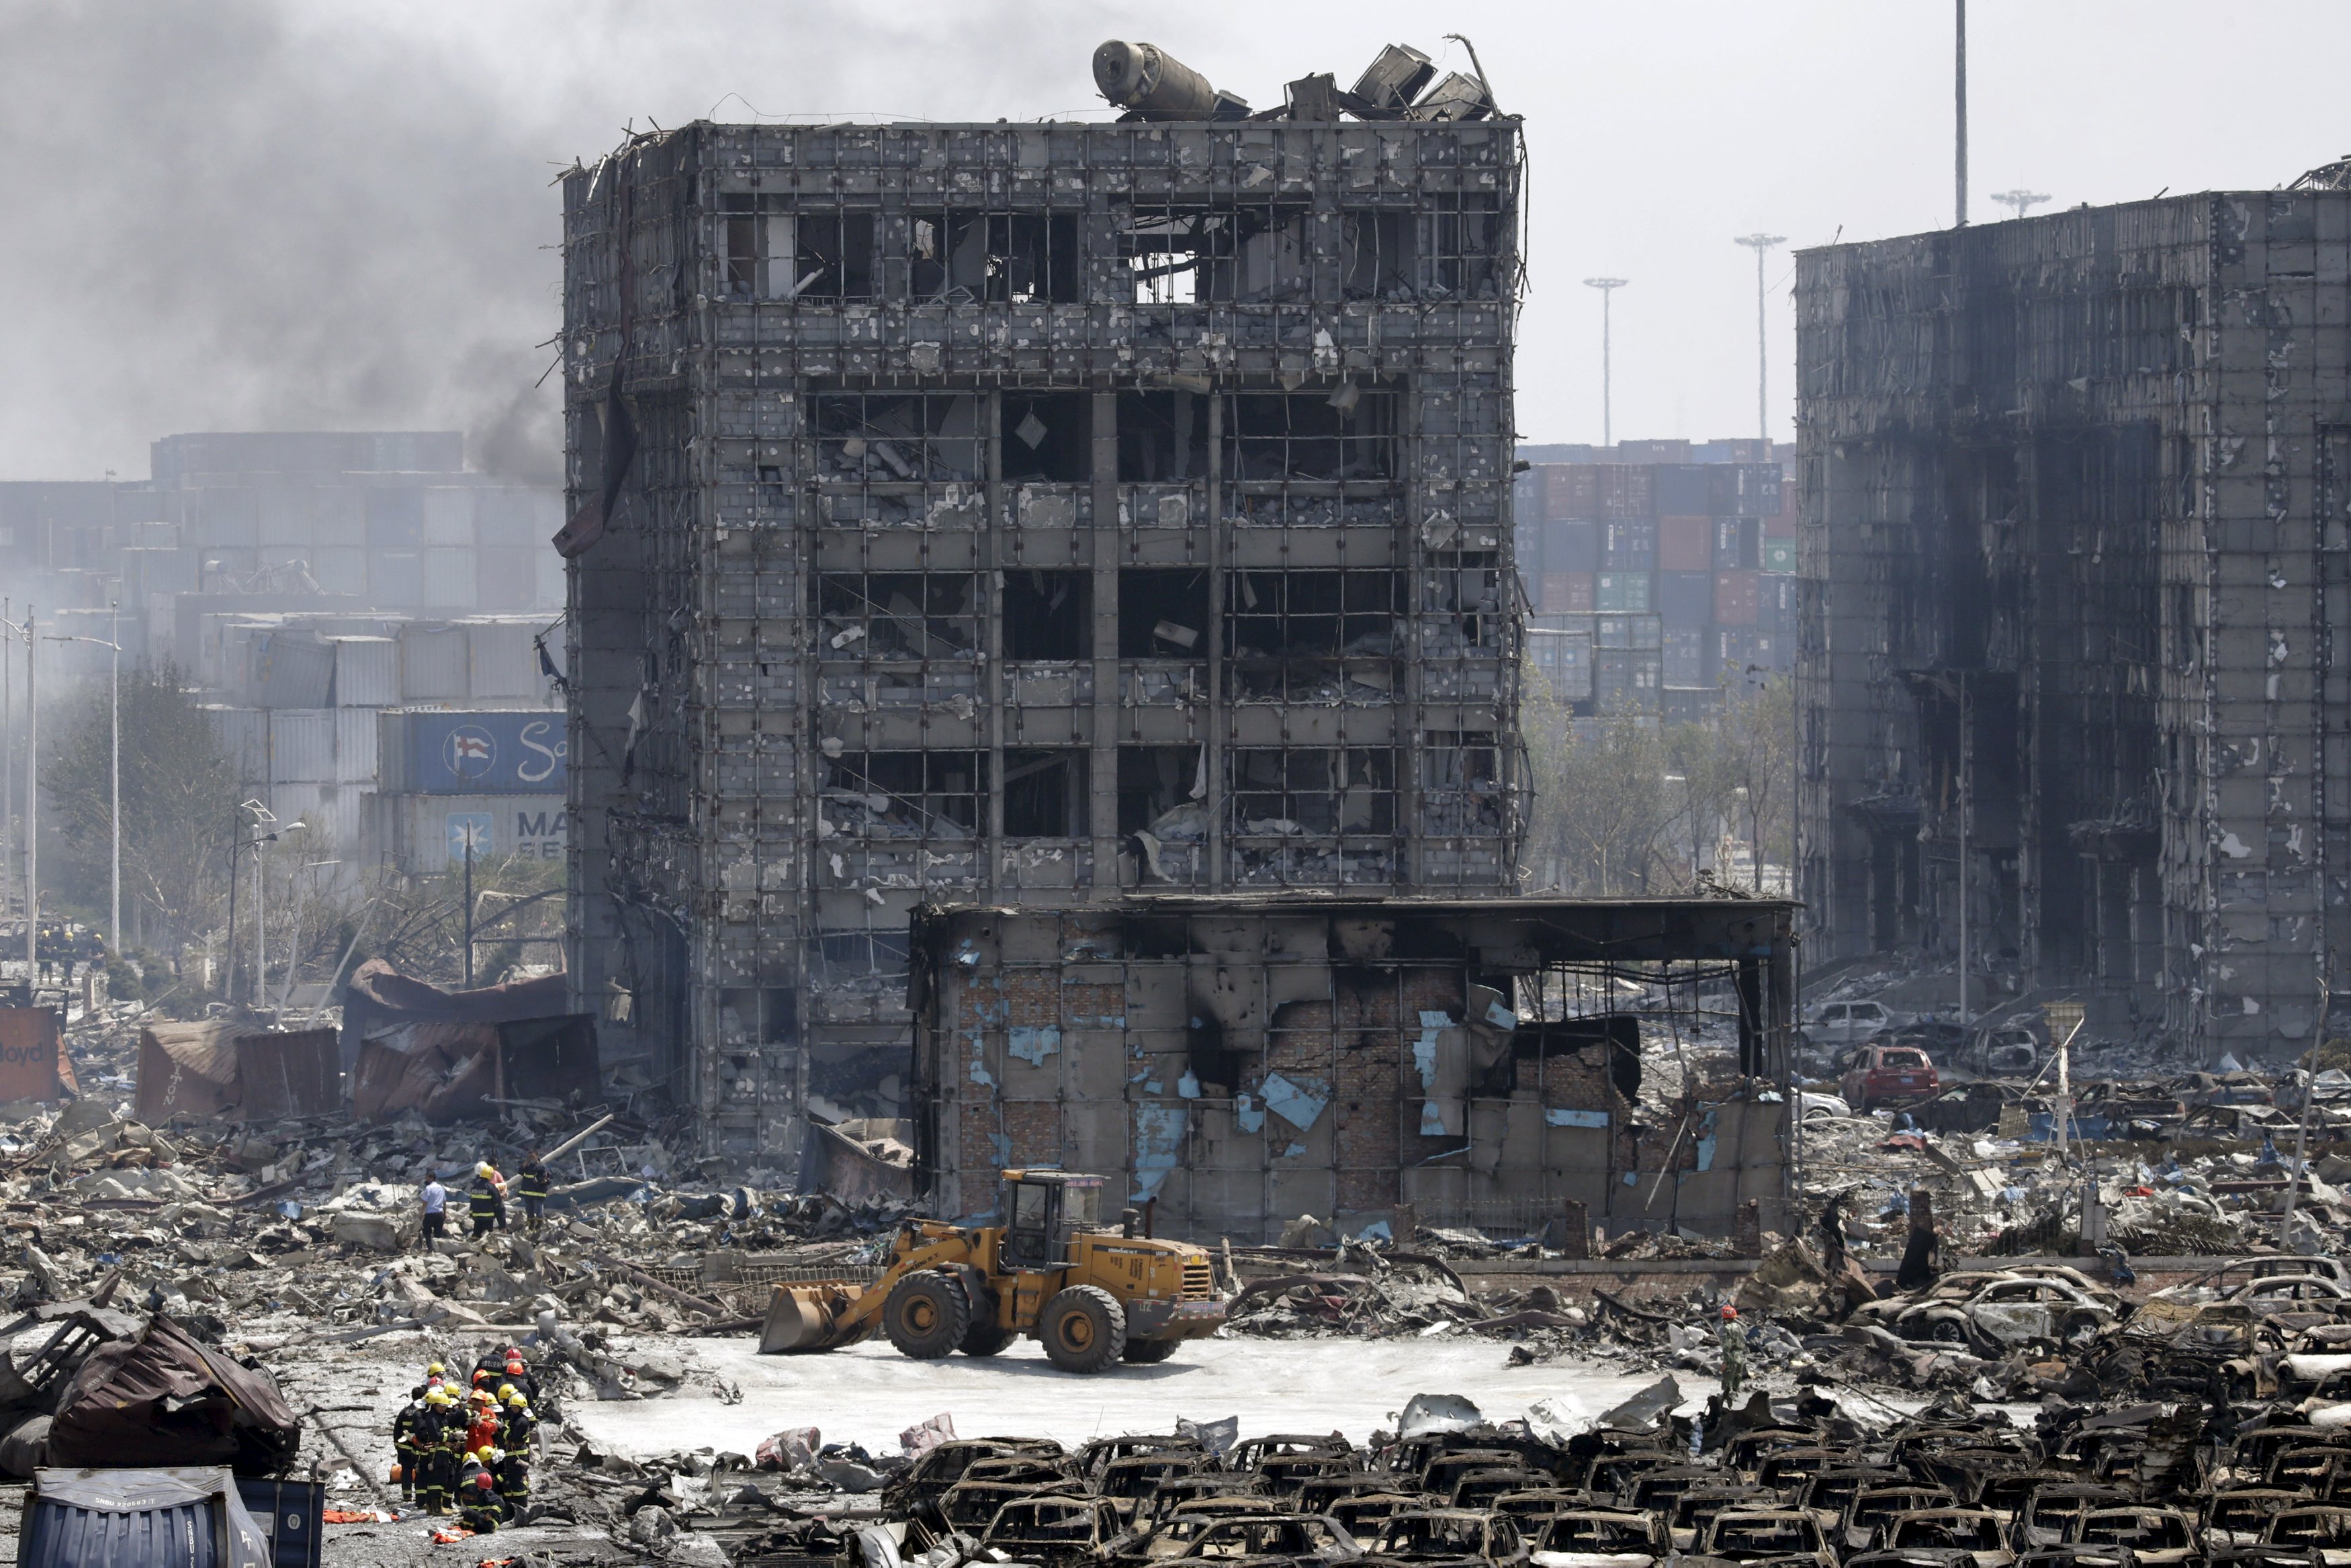 Здание разрушенное взрывом. Техногенная катастрофа в Китае в августе 2015. Разрушенное здание.